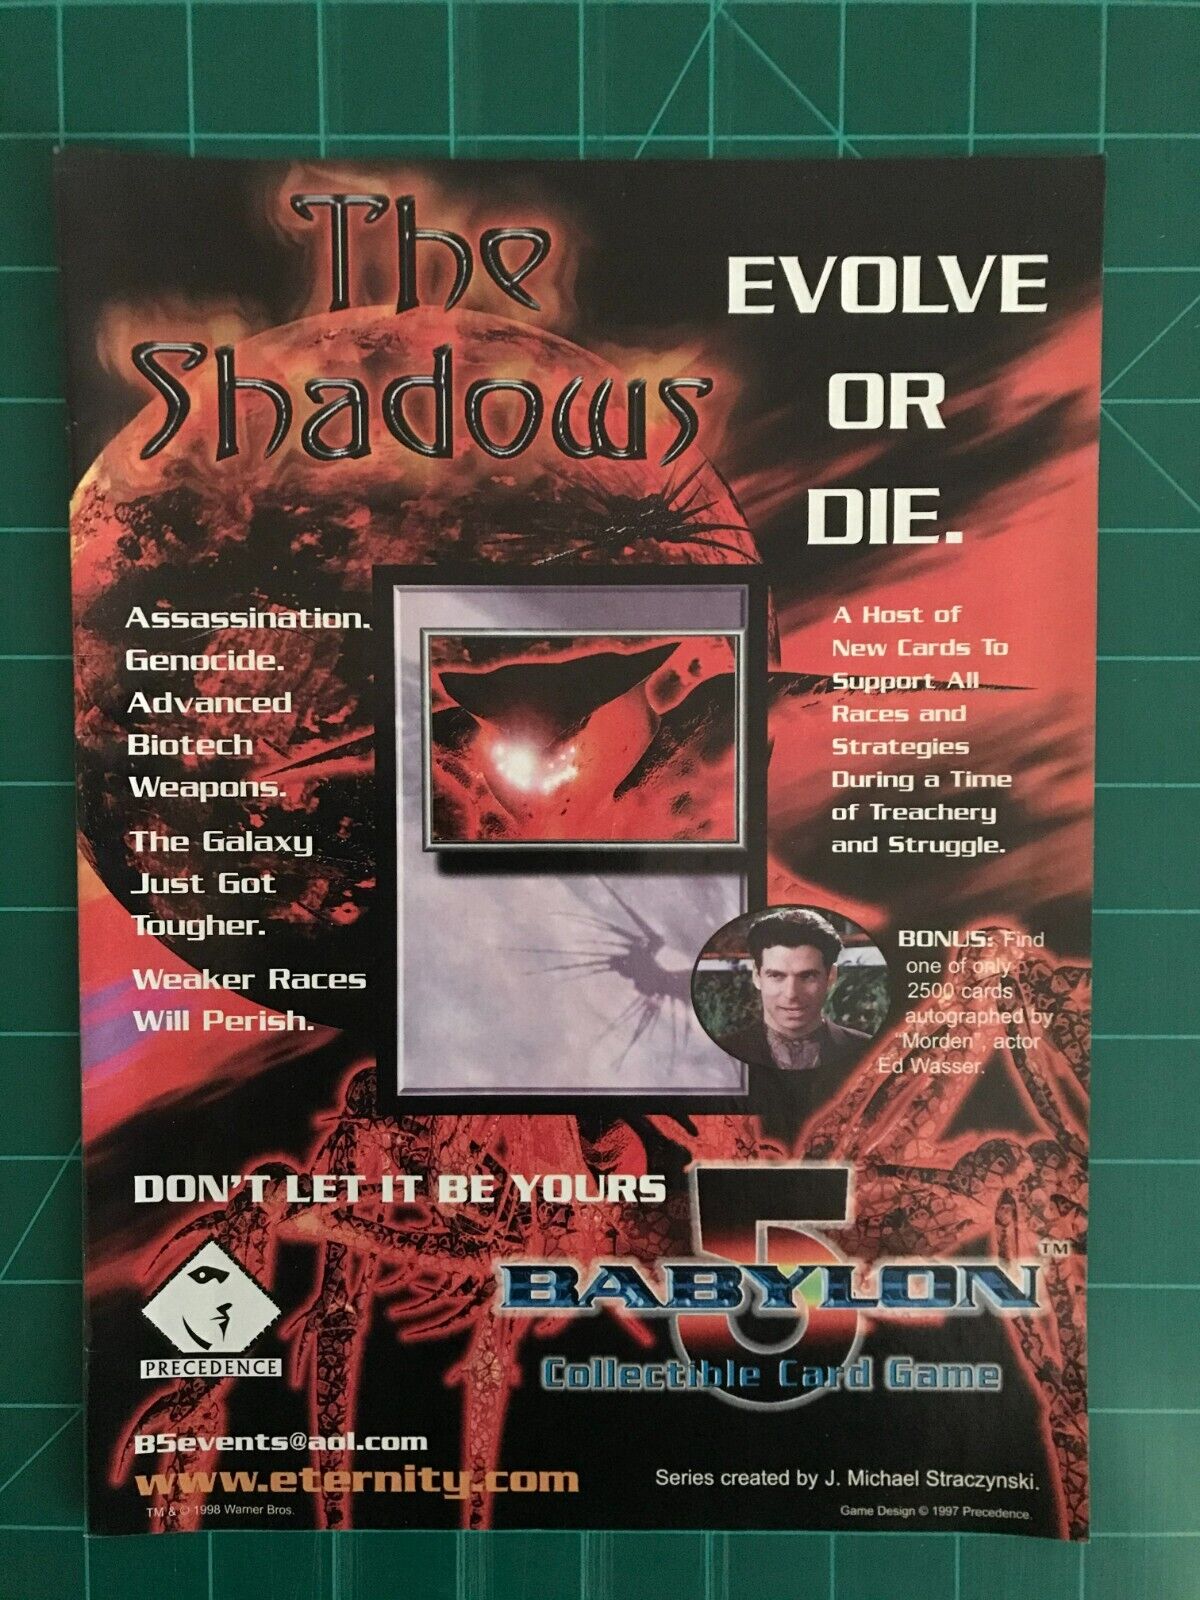 1998 Babylon 5 CCG Print Ad. The Shadows. Precedence. \